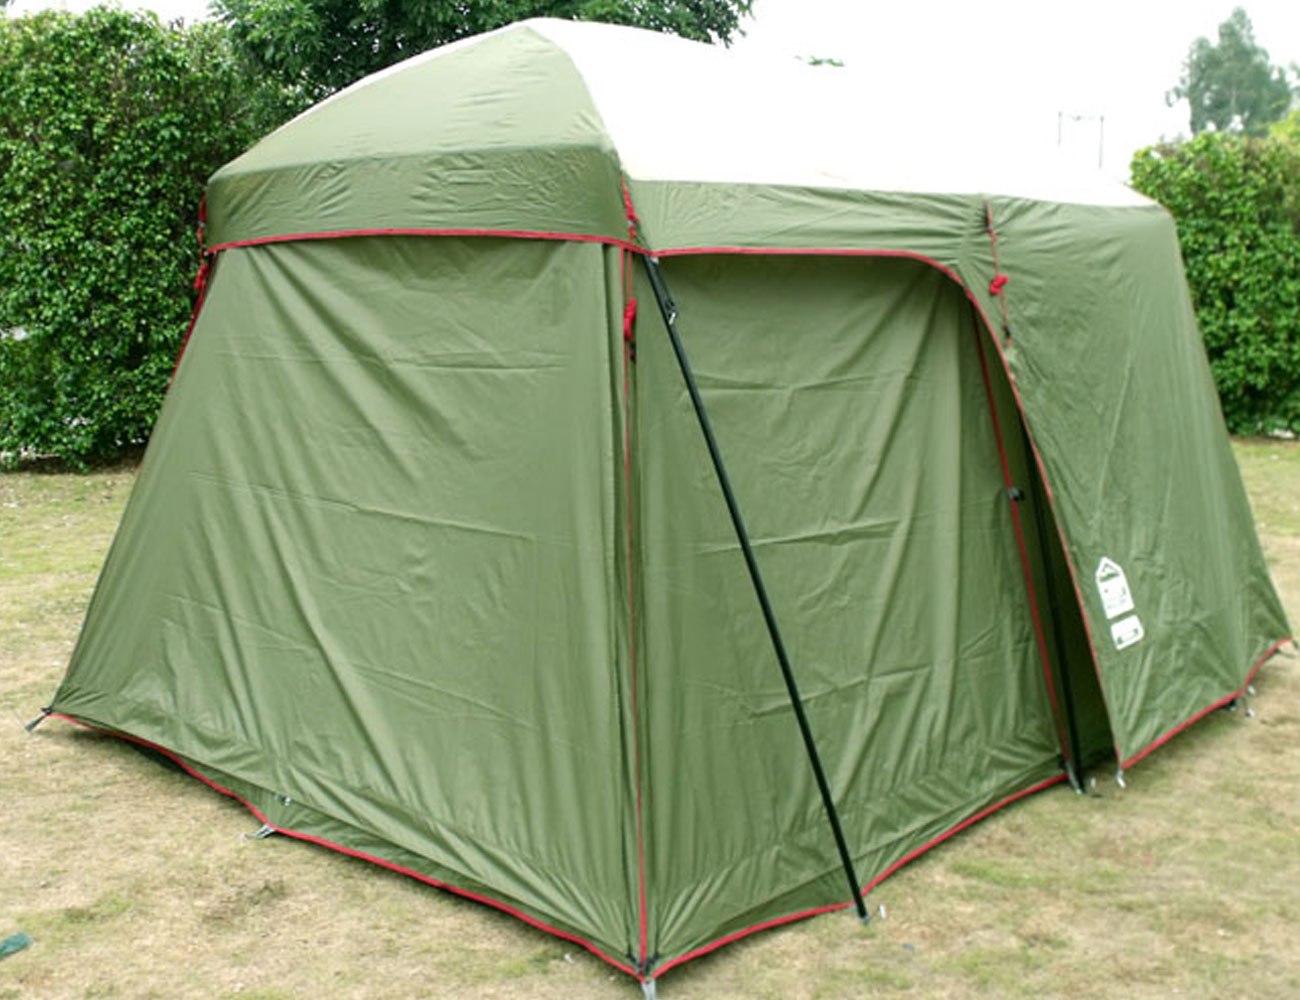  палатка-шатер | Мир Гаджетов